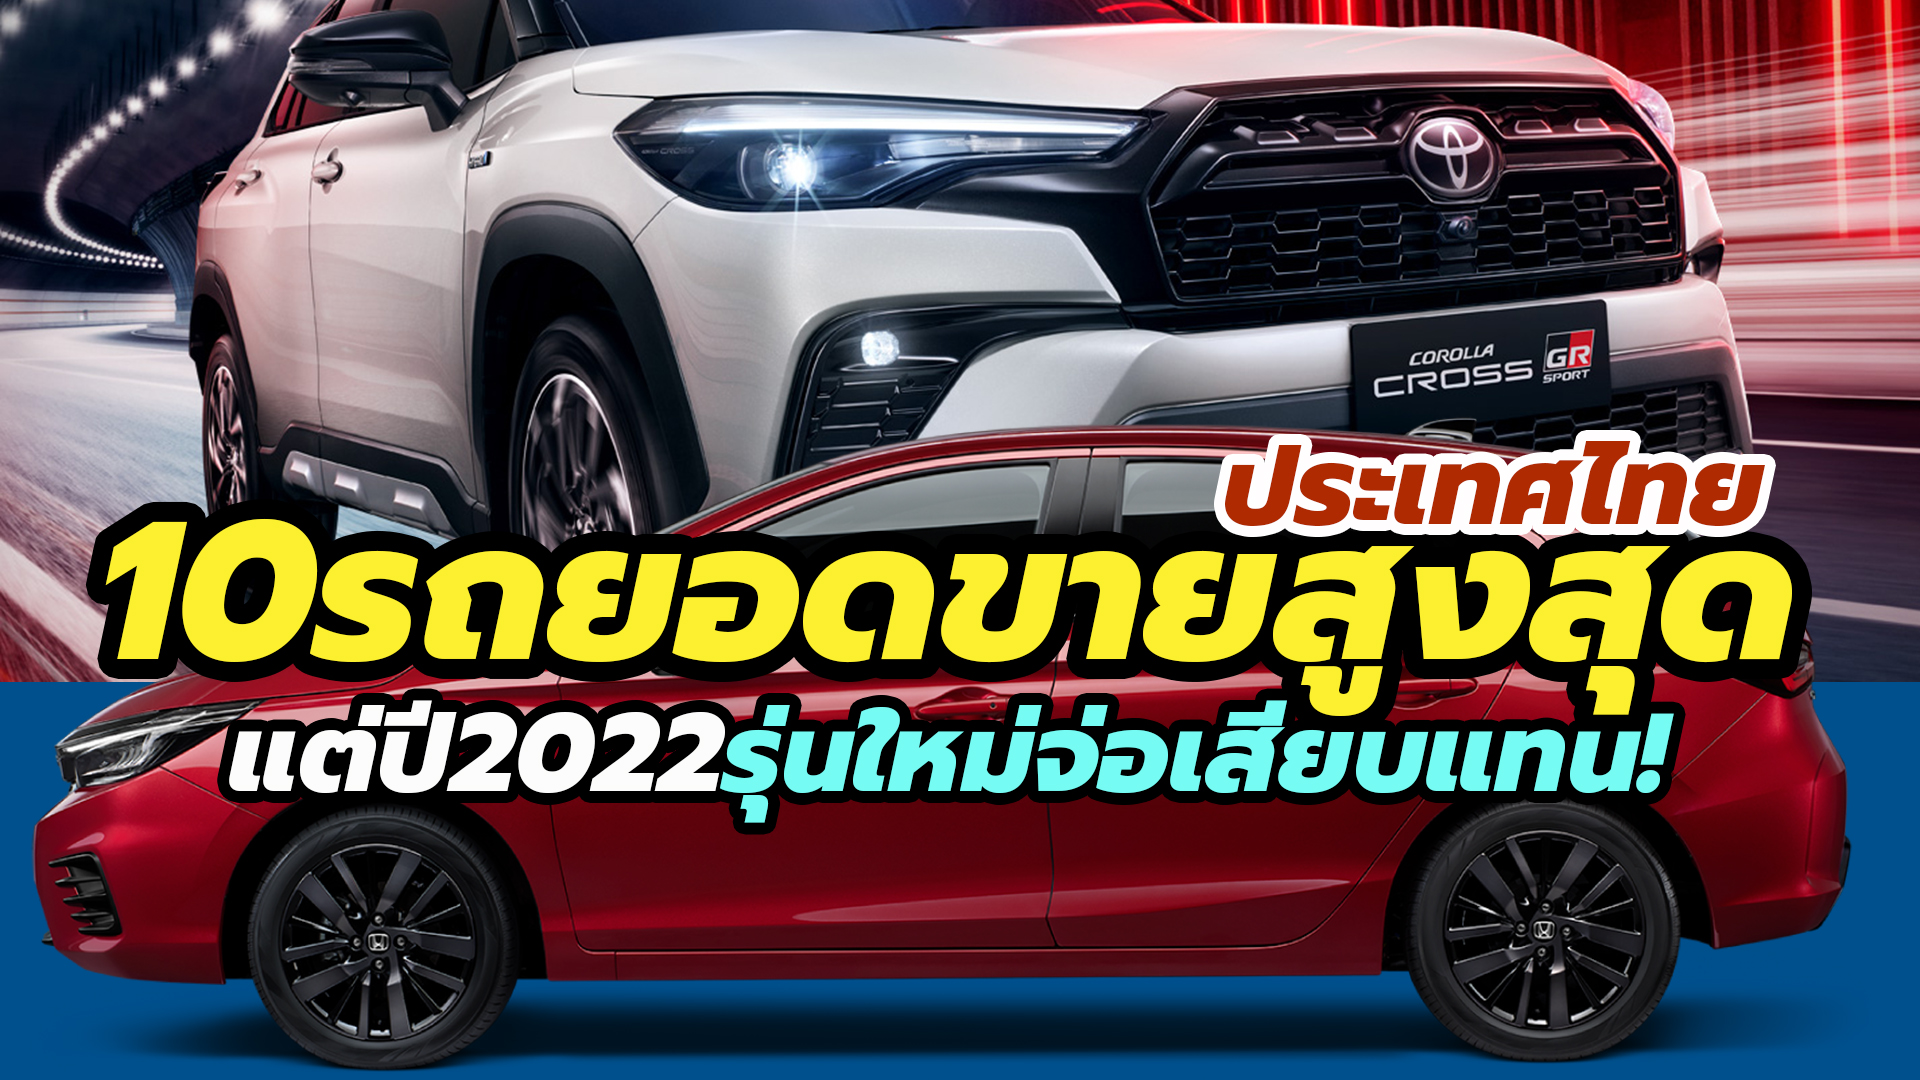 10 อันดับรุ่นรถยนต์ ที่ขายดีที่สุดในไทย ประจำปี 2021/2564 แต่ปีนี้อาจมี